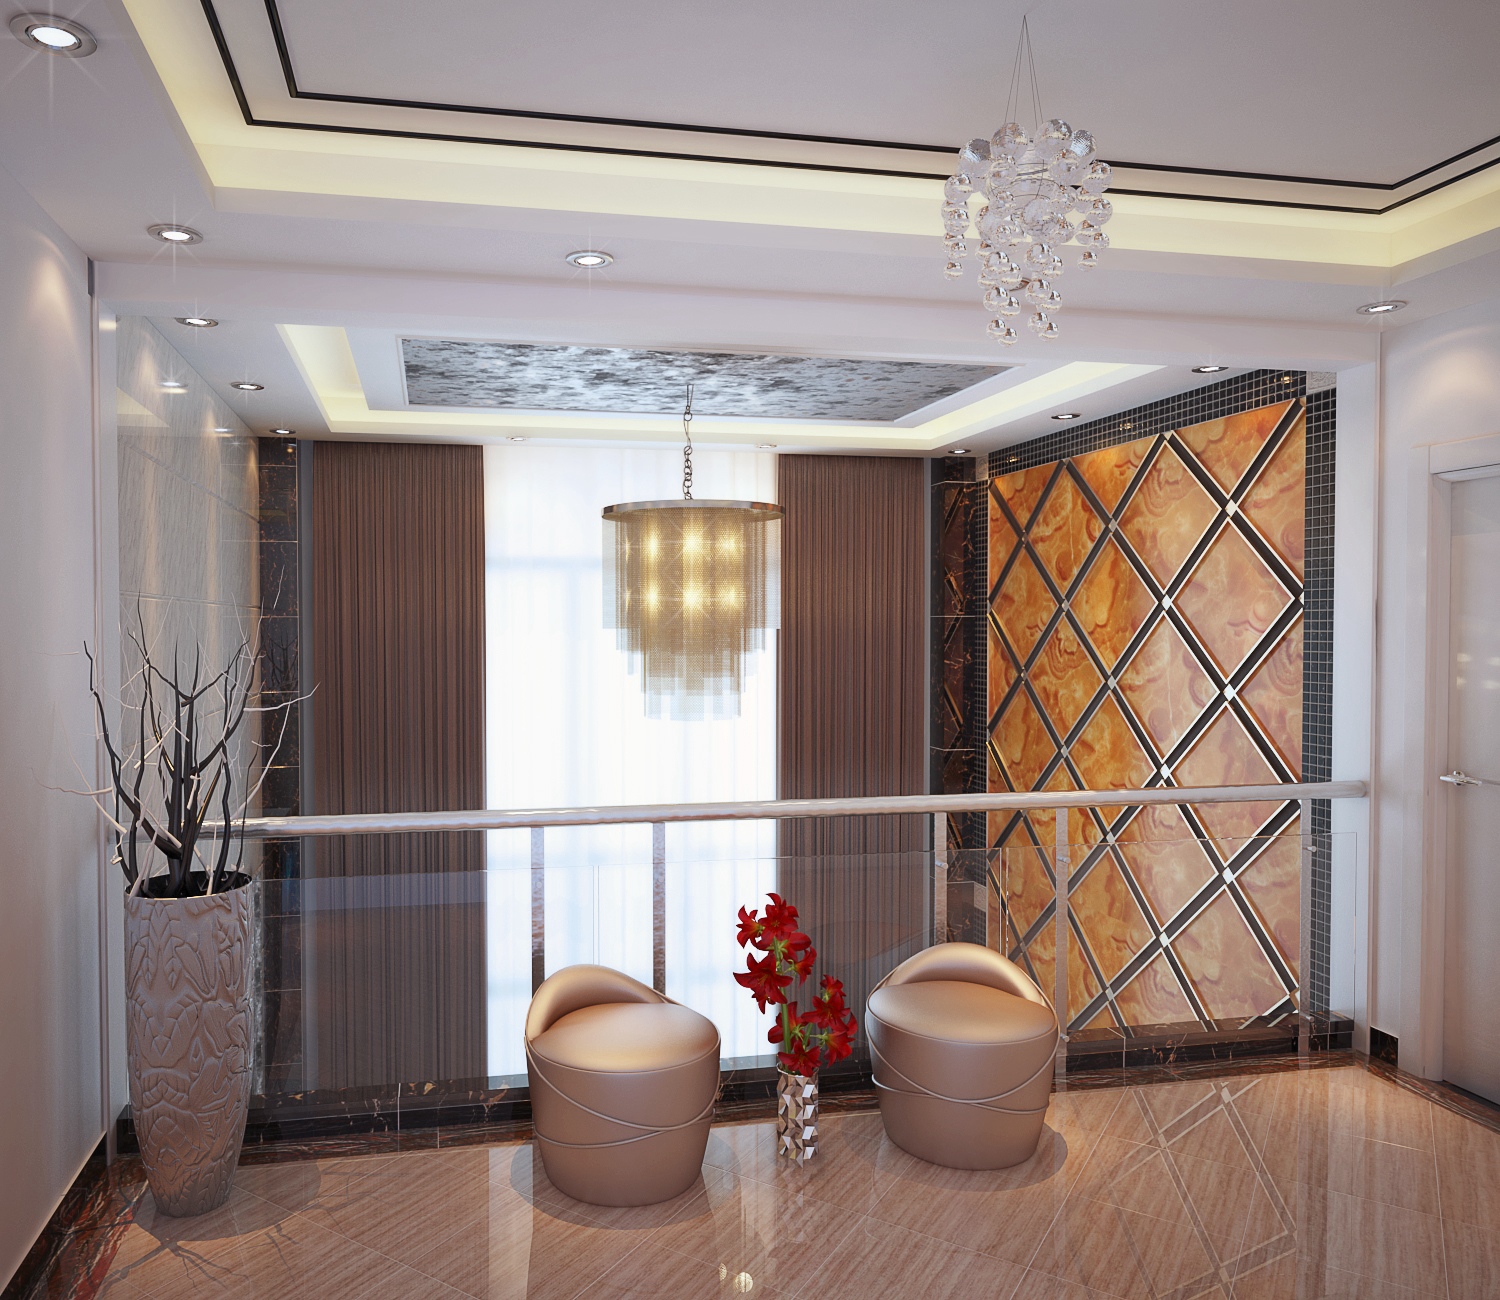 复式 跃层 白领 高富帅 其他图片来自北京合建装饰在舒适的复式大宅的分享